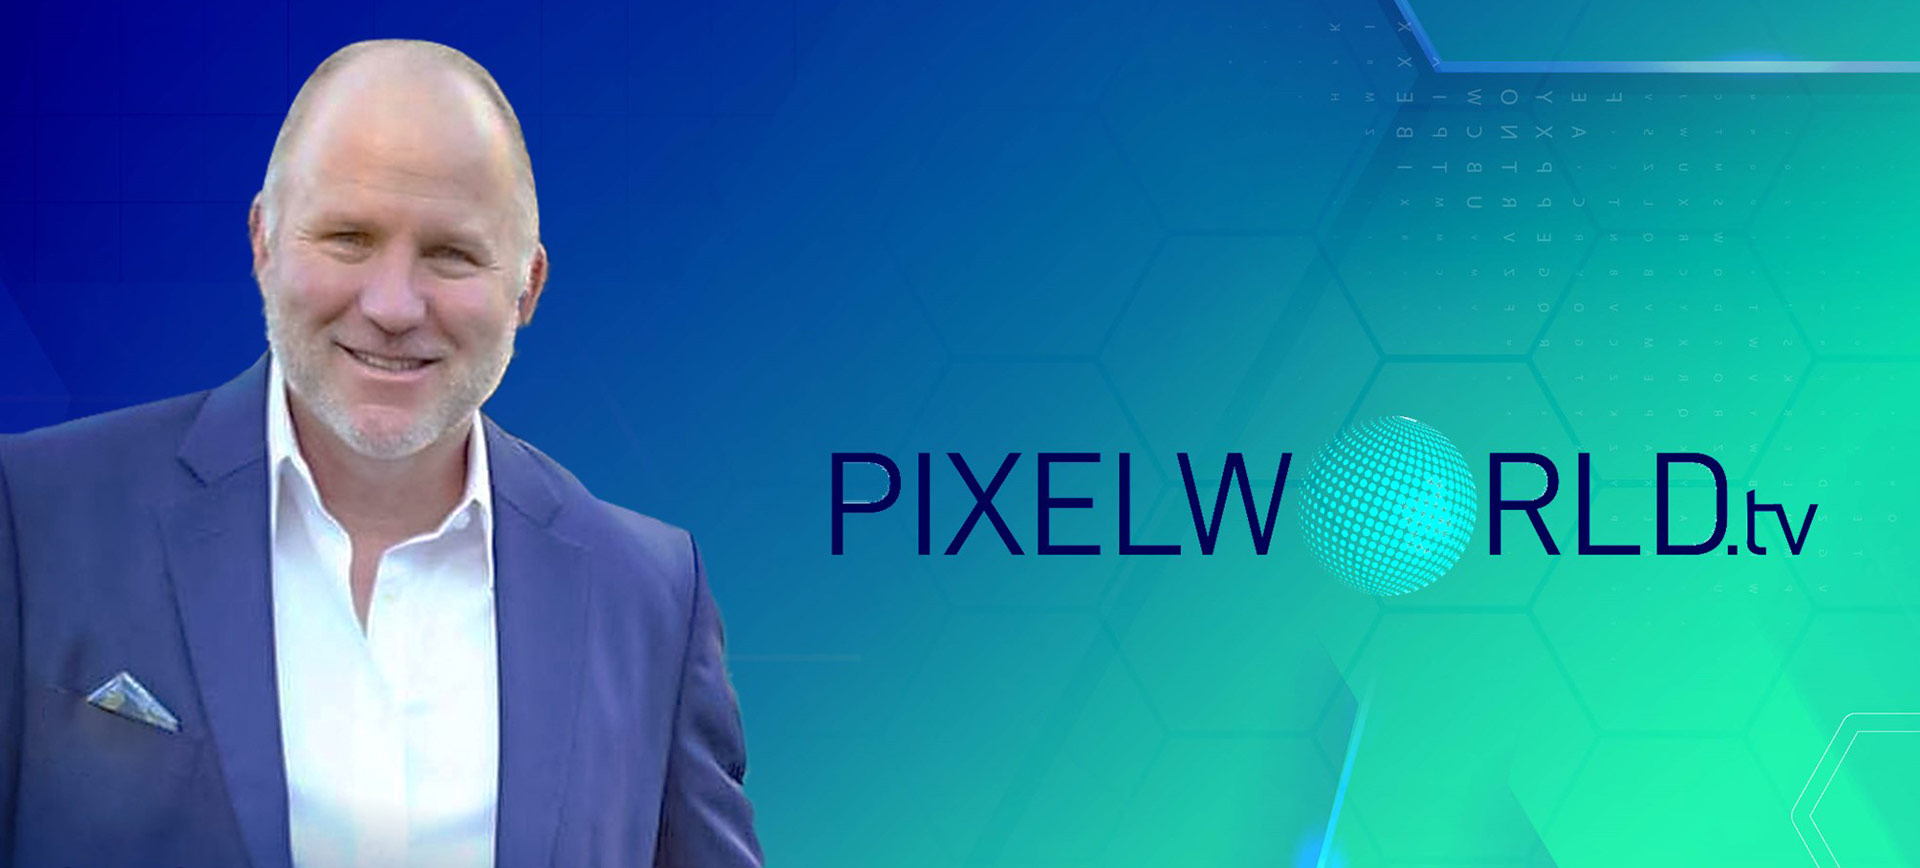 Sam Scaman, President & Founder of PixelWorld.tv